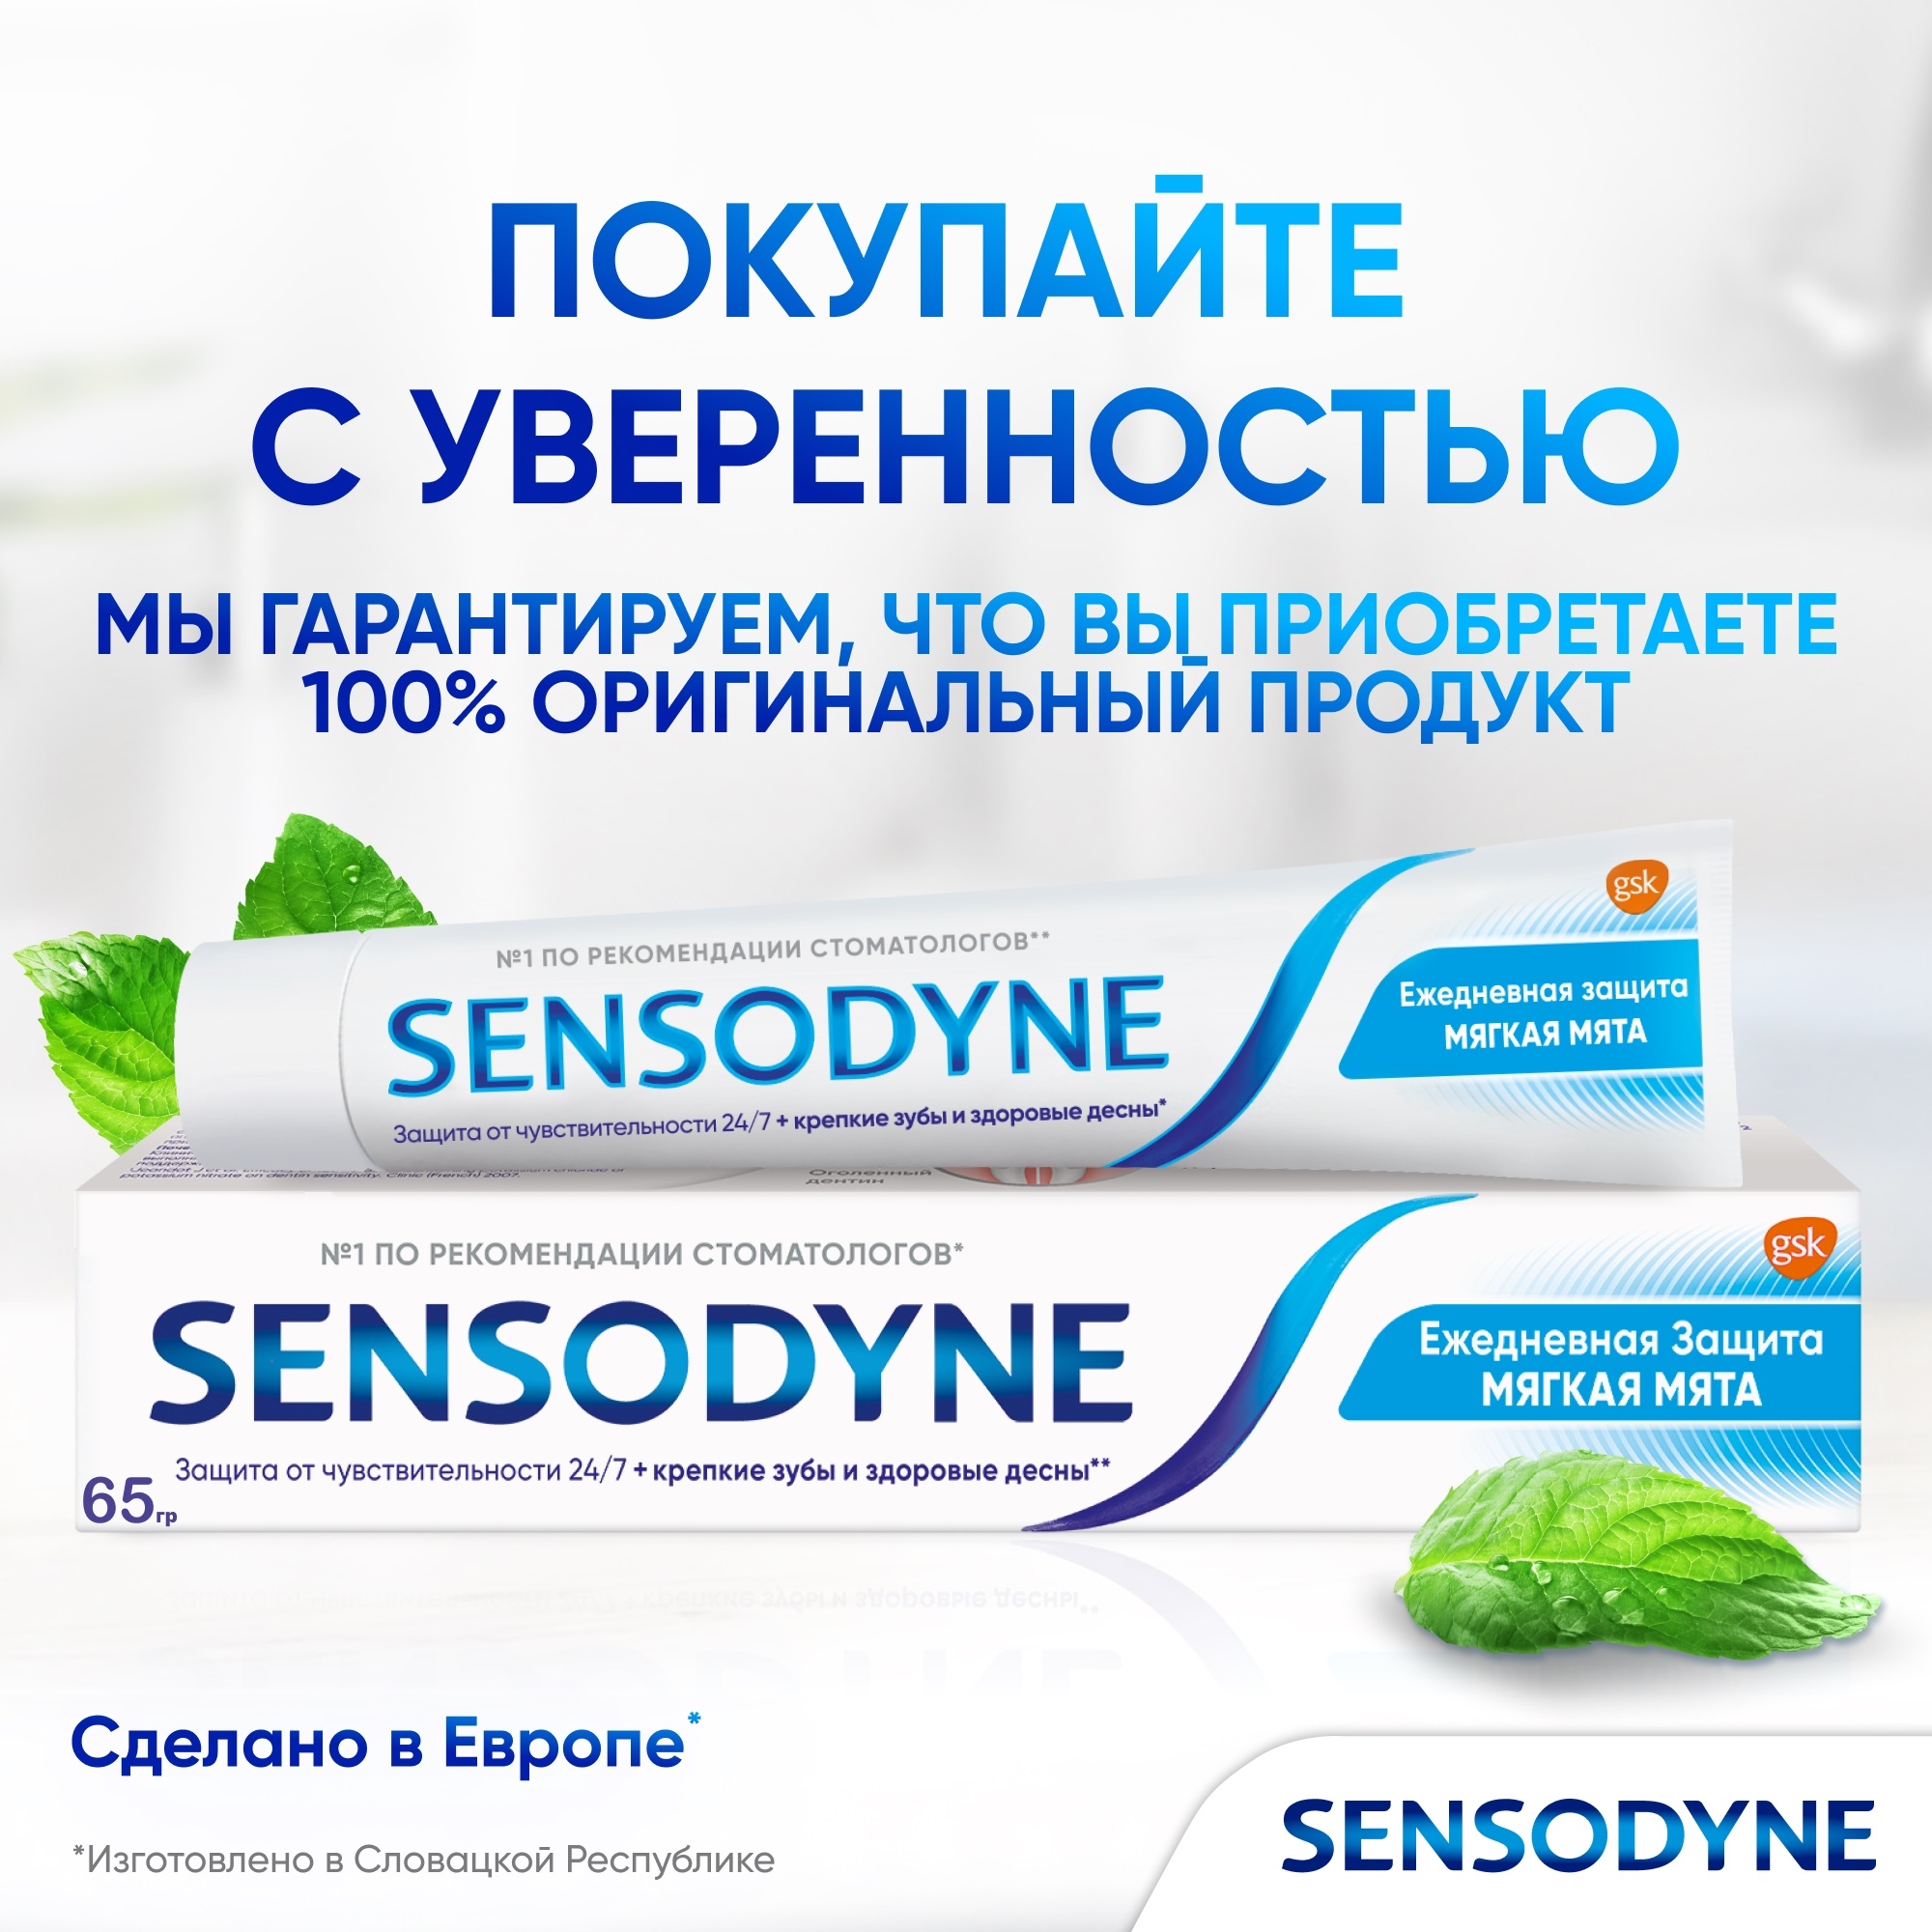 Зубная паста Sensodyne Ежедневная защита Мягкаямята 65 г - фото 11